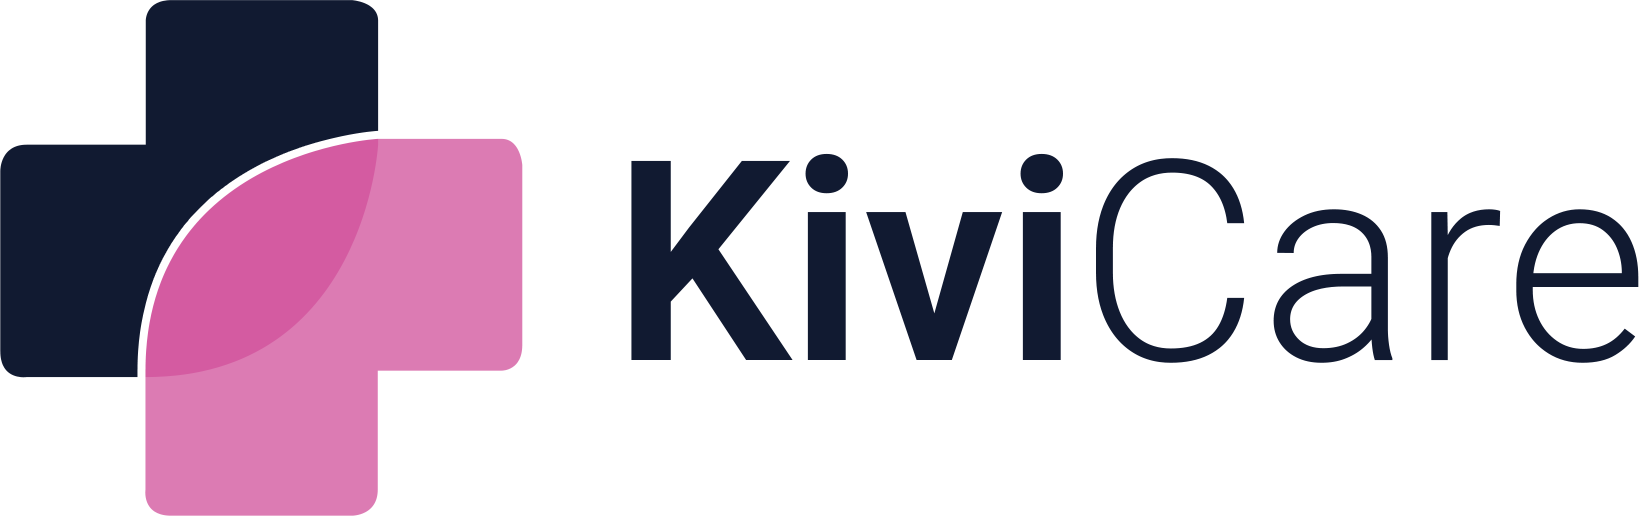 kivi-logo-6